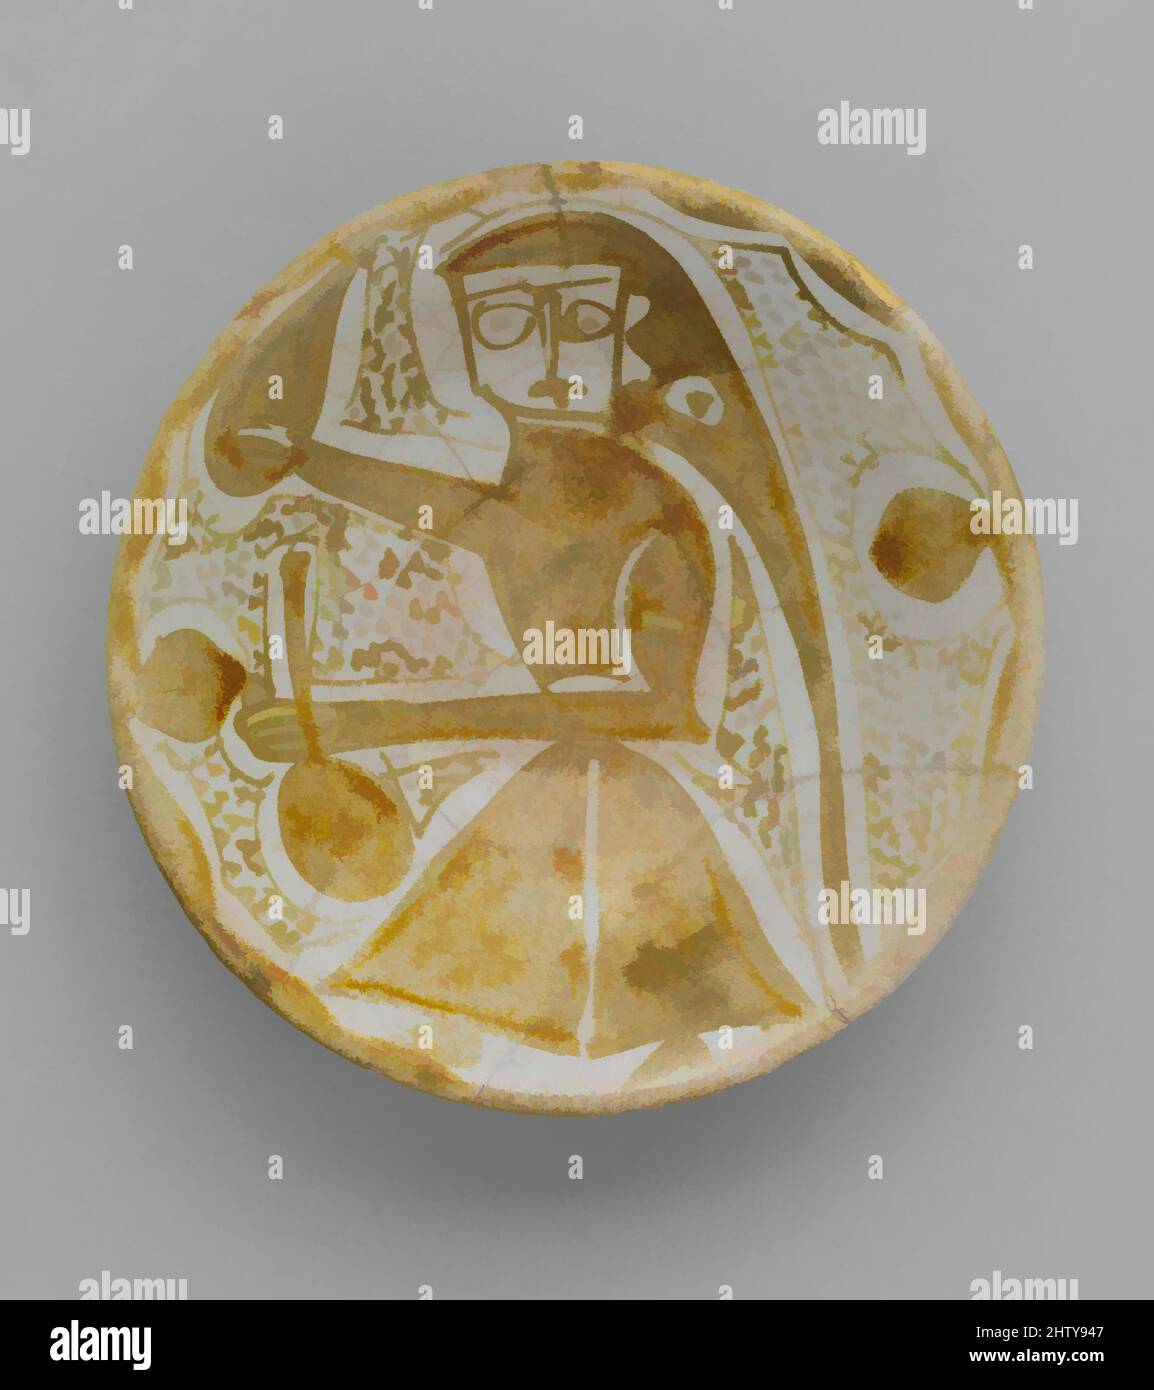 Kunst inspiriert von importierten Lustre Bowl, 10. Jahrhundert, im Irak hergestellt. Im Iran ausgegraben, Nishapur, Steingut; Glanzbemalung auf einer opaken weißen Glasur, H. 1 1/2 Zoll (3,8 cm), Keramik, Diese glänzende Porzellanschüssel stellt nur eine der Keramiktypen aus dem Irak dar, die in Nishapur gefunden wurde. ITS, Classic Works modernisiert von Artotop mit einem Schuss Moderne. Formen, Farbe und Wert, auffällige visuelle Wirkung auf Kunst. Emotionen durch Freiheit von Kunstwerken auf zeitgemäße Weise. Eine zeitlose Botschaft, die eine wild kreative neue Richtung verfolgt. Künstler, die sich dem digitalen Medium zuwenden und die Artotop NFT erschaffen Stockfoto